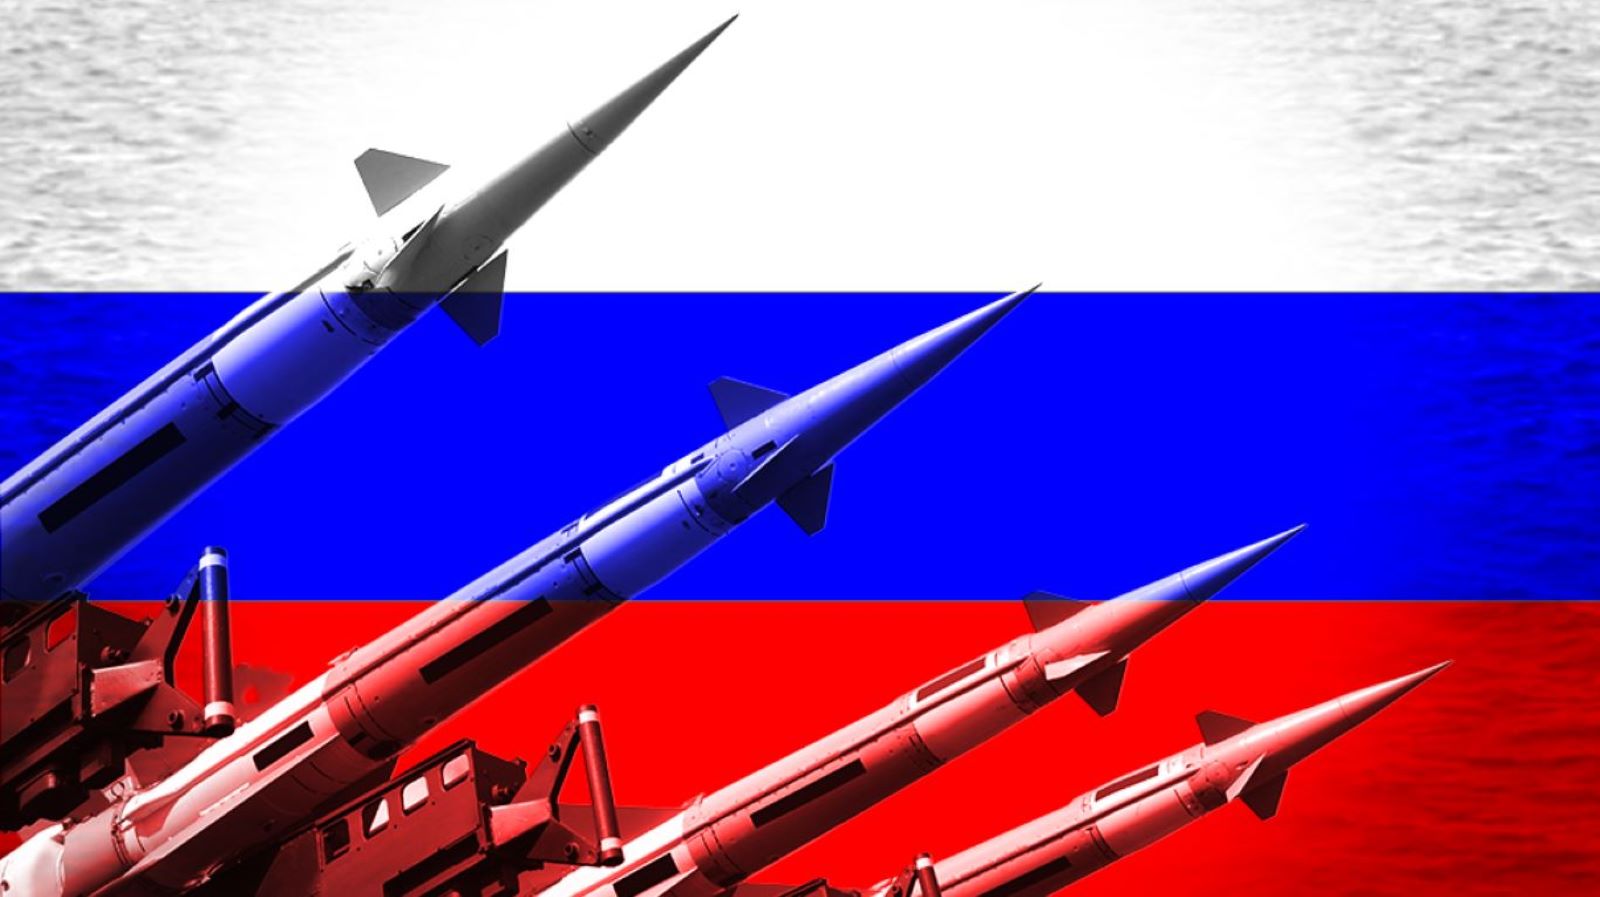 التكهنات بأن روسيا تهدد باستخدام أسلحة نووية في أوكرانيا "غير واقعية ومرفوضة تماما (تواصل اجتماعي)